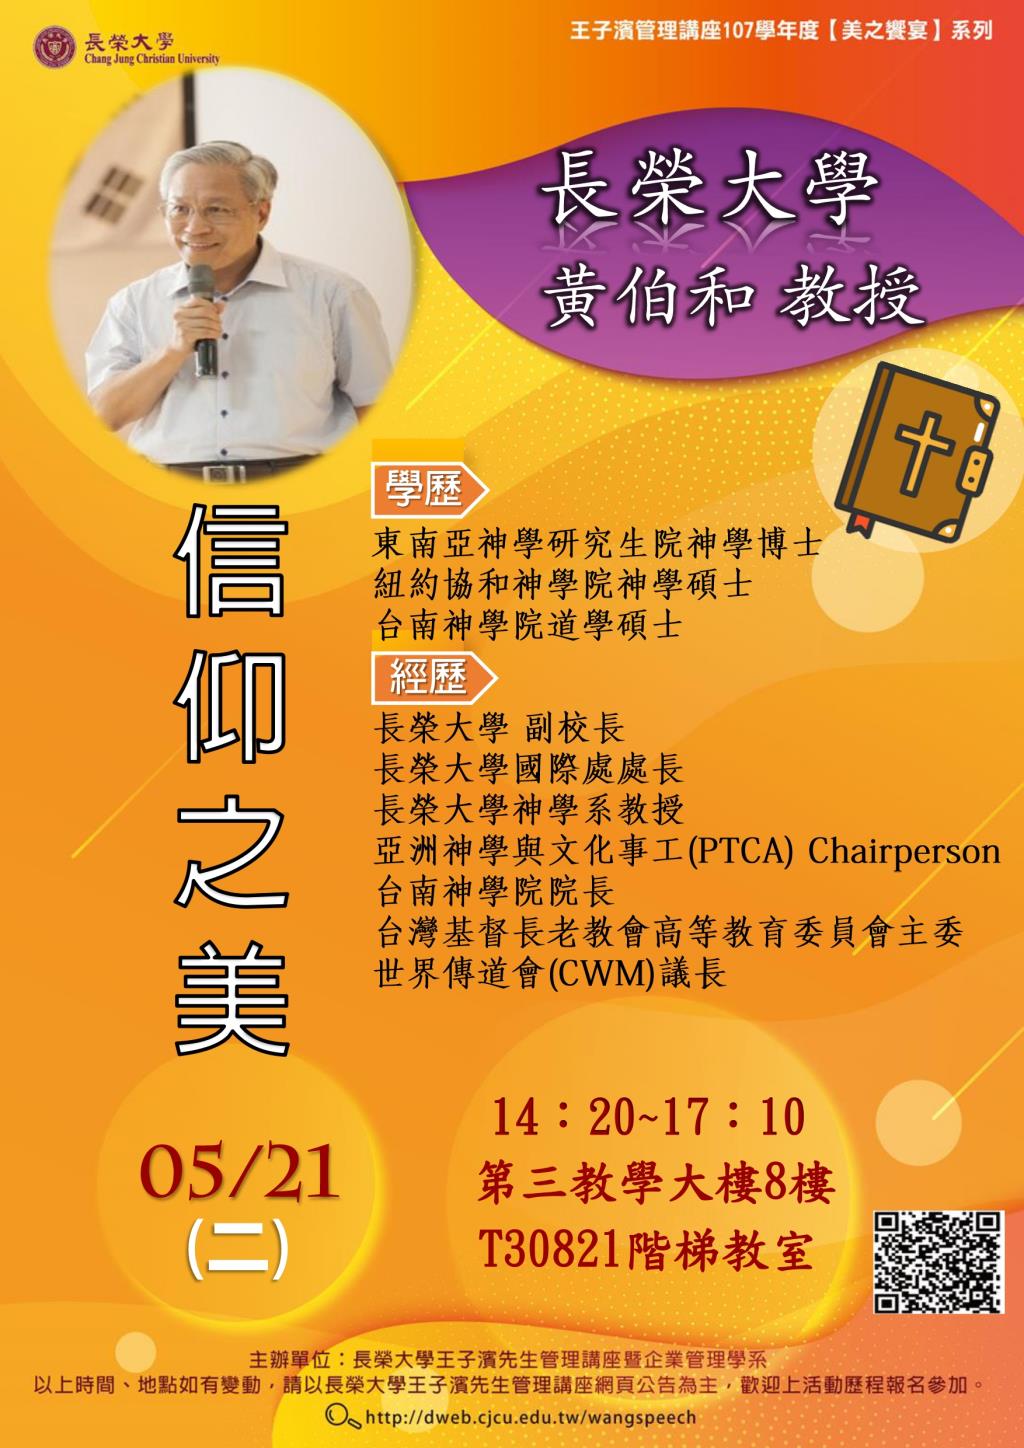 敬邀參加本週二下午(05/21)王子濱先生管理講座---長榮大學 黃伯和教授